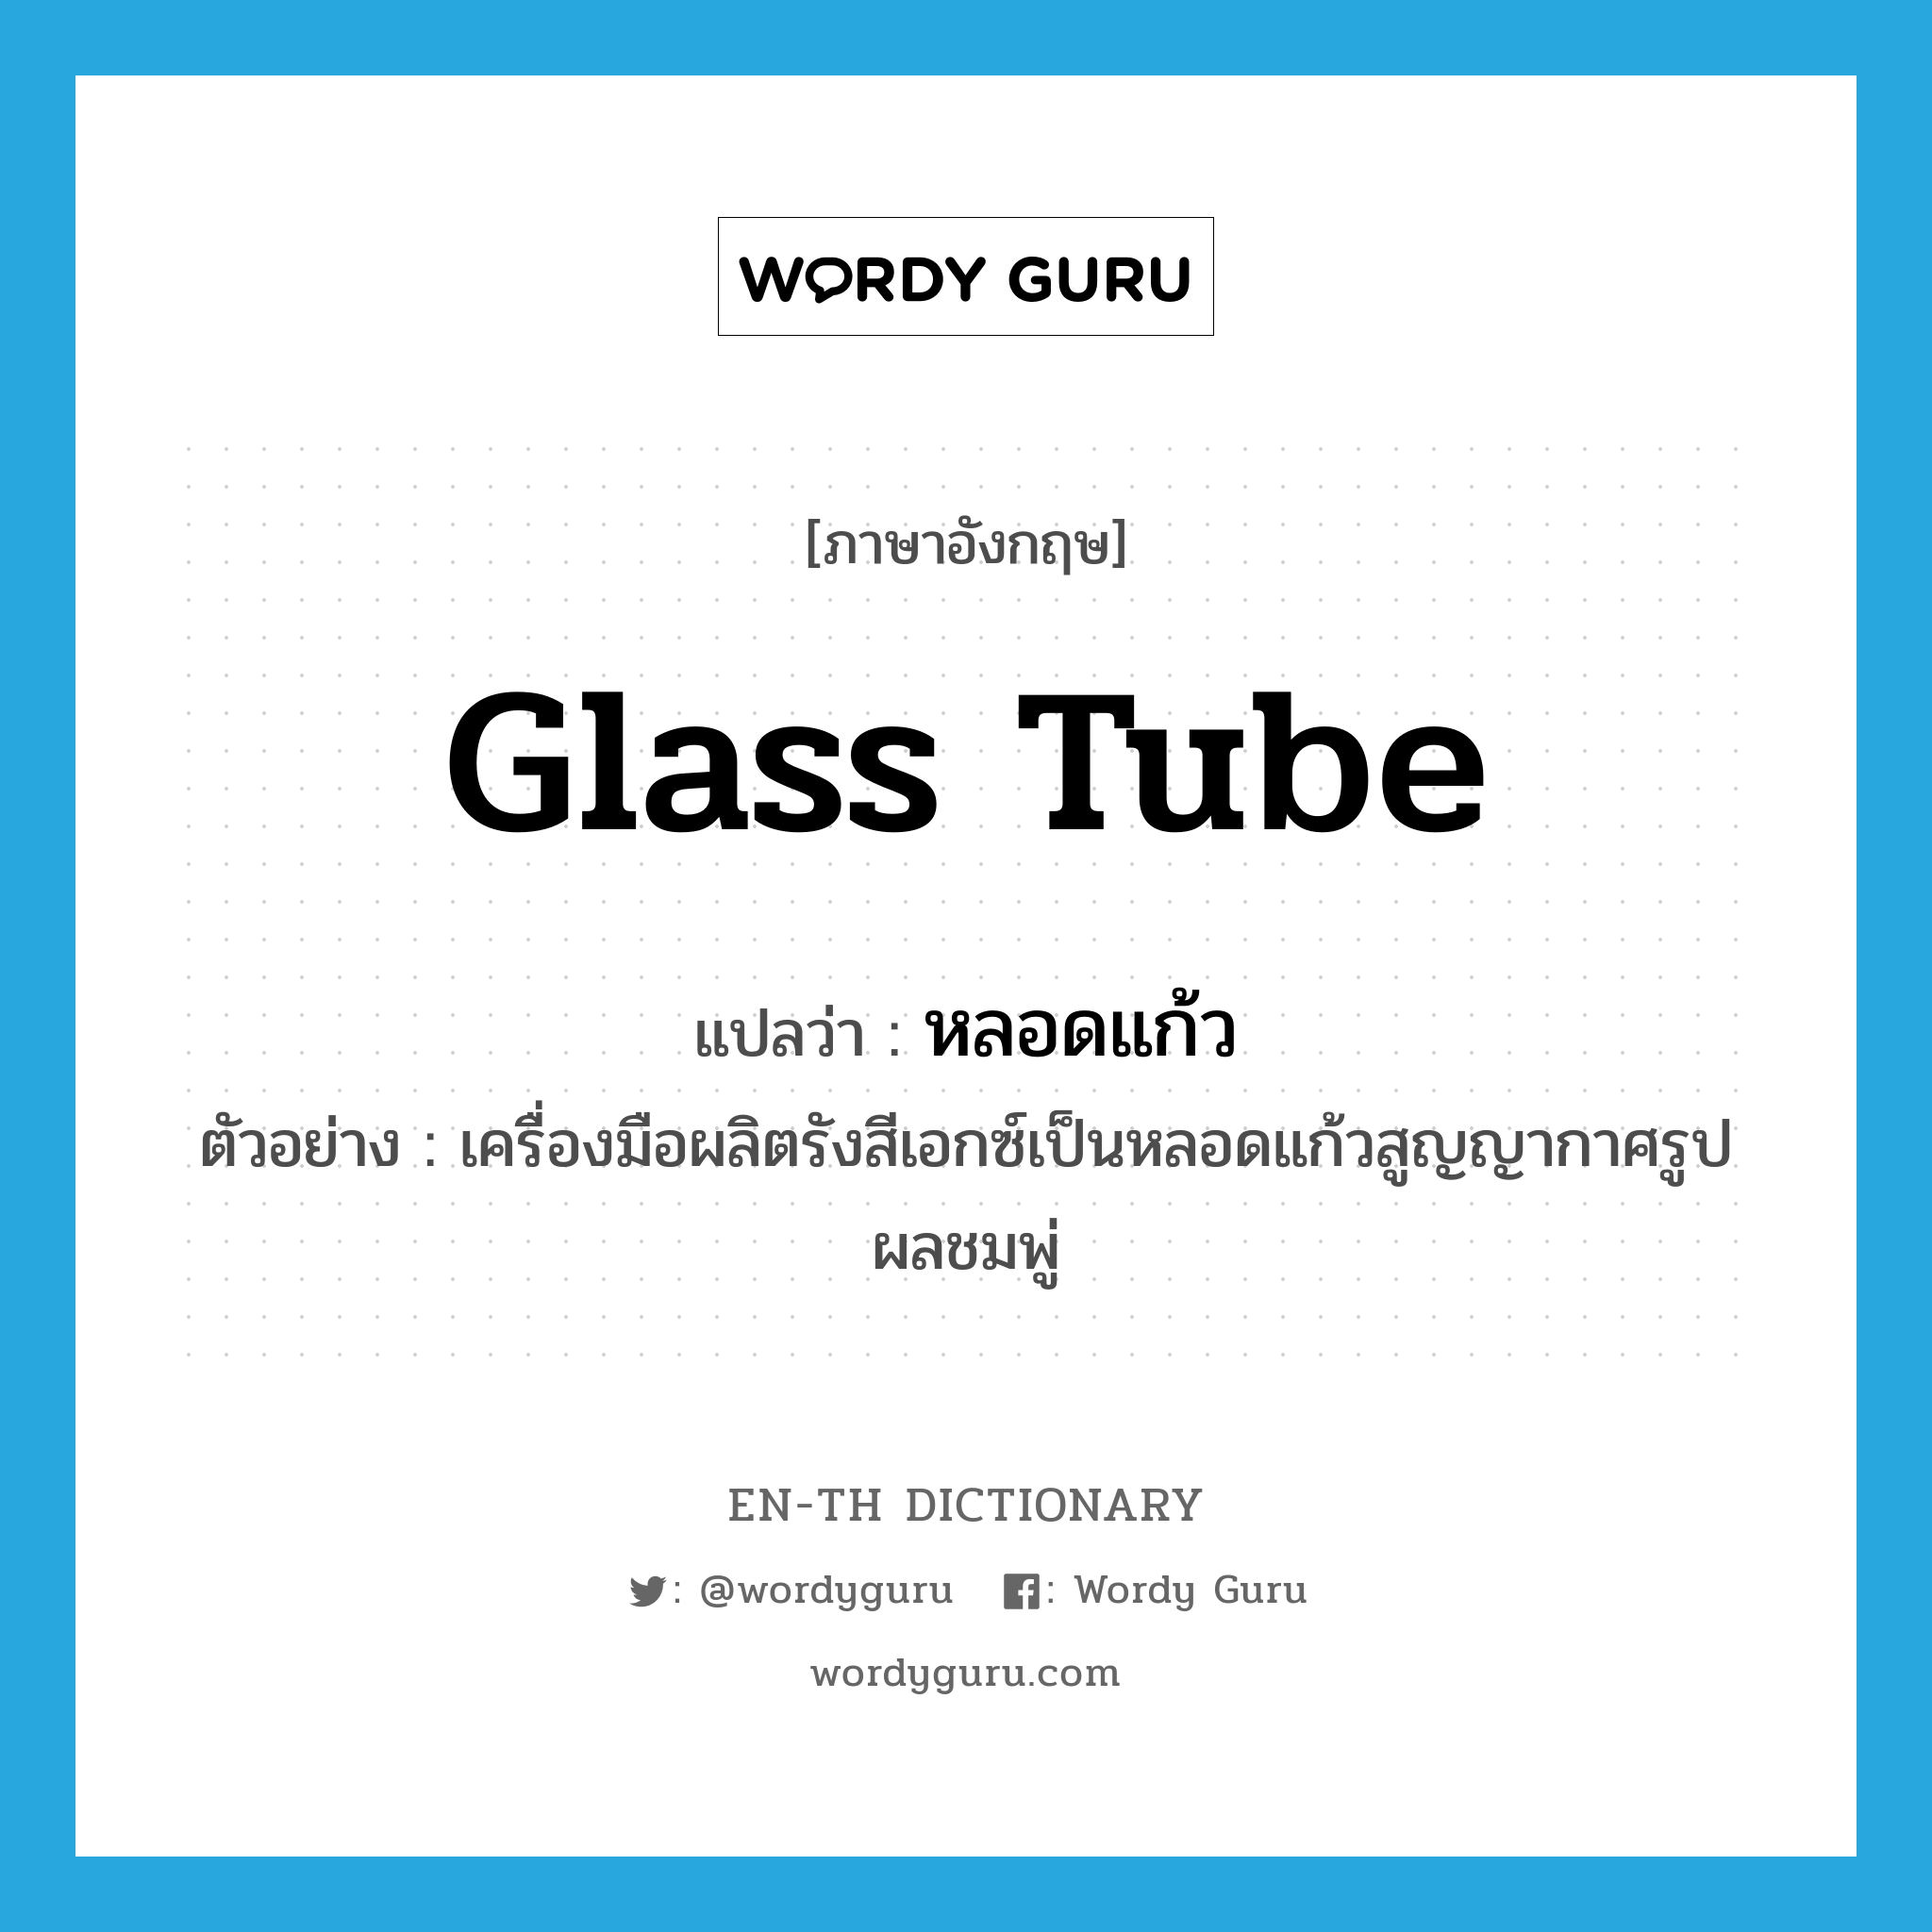 glass tube แปลว่า?, คำศัพท์ภาษาอังกฤษ glass tube แปลว่า หลอดแก้ว ประเภท N ตัวอย่าง เครื่องมือผลิตรังสีเอกซ์เป็นหลอดแก้วสูญญากาศรูปผลชมพู่ หมวด N